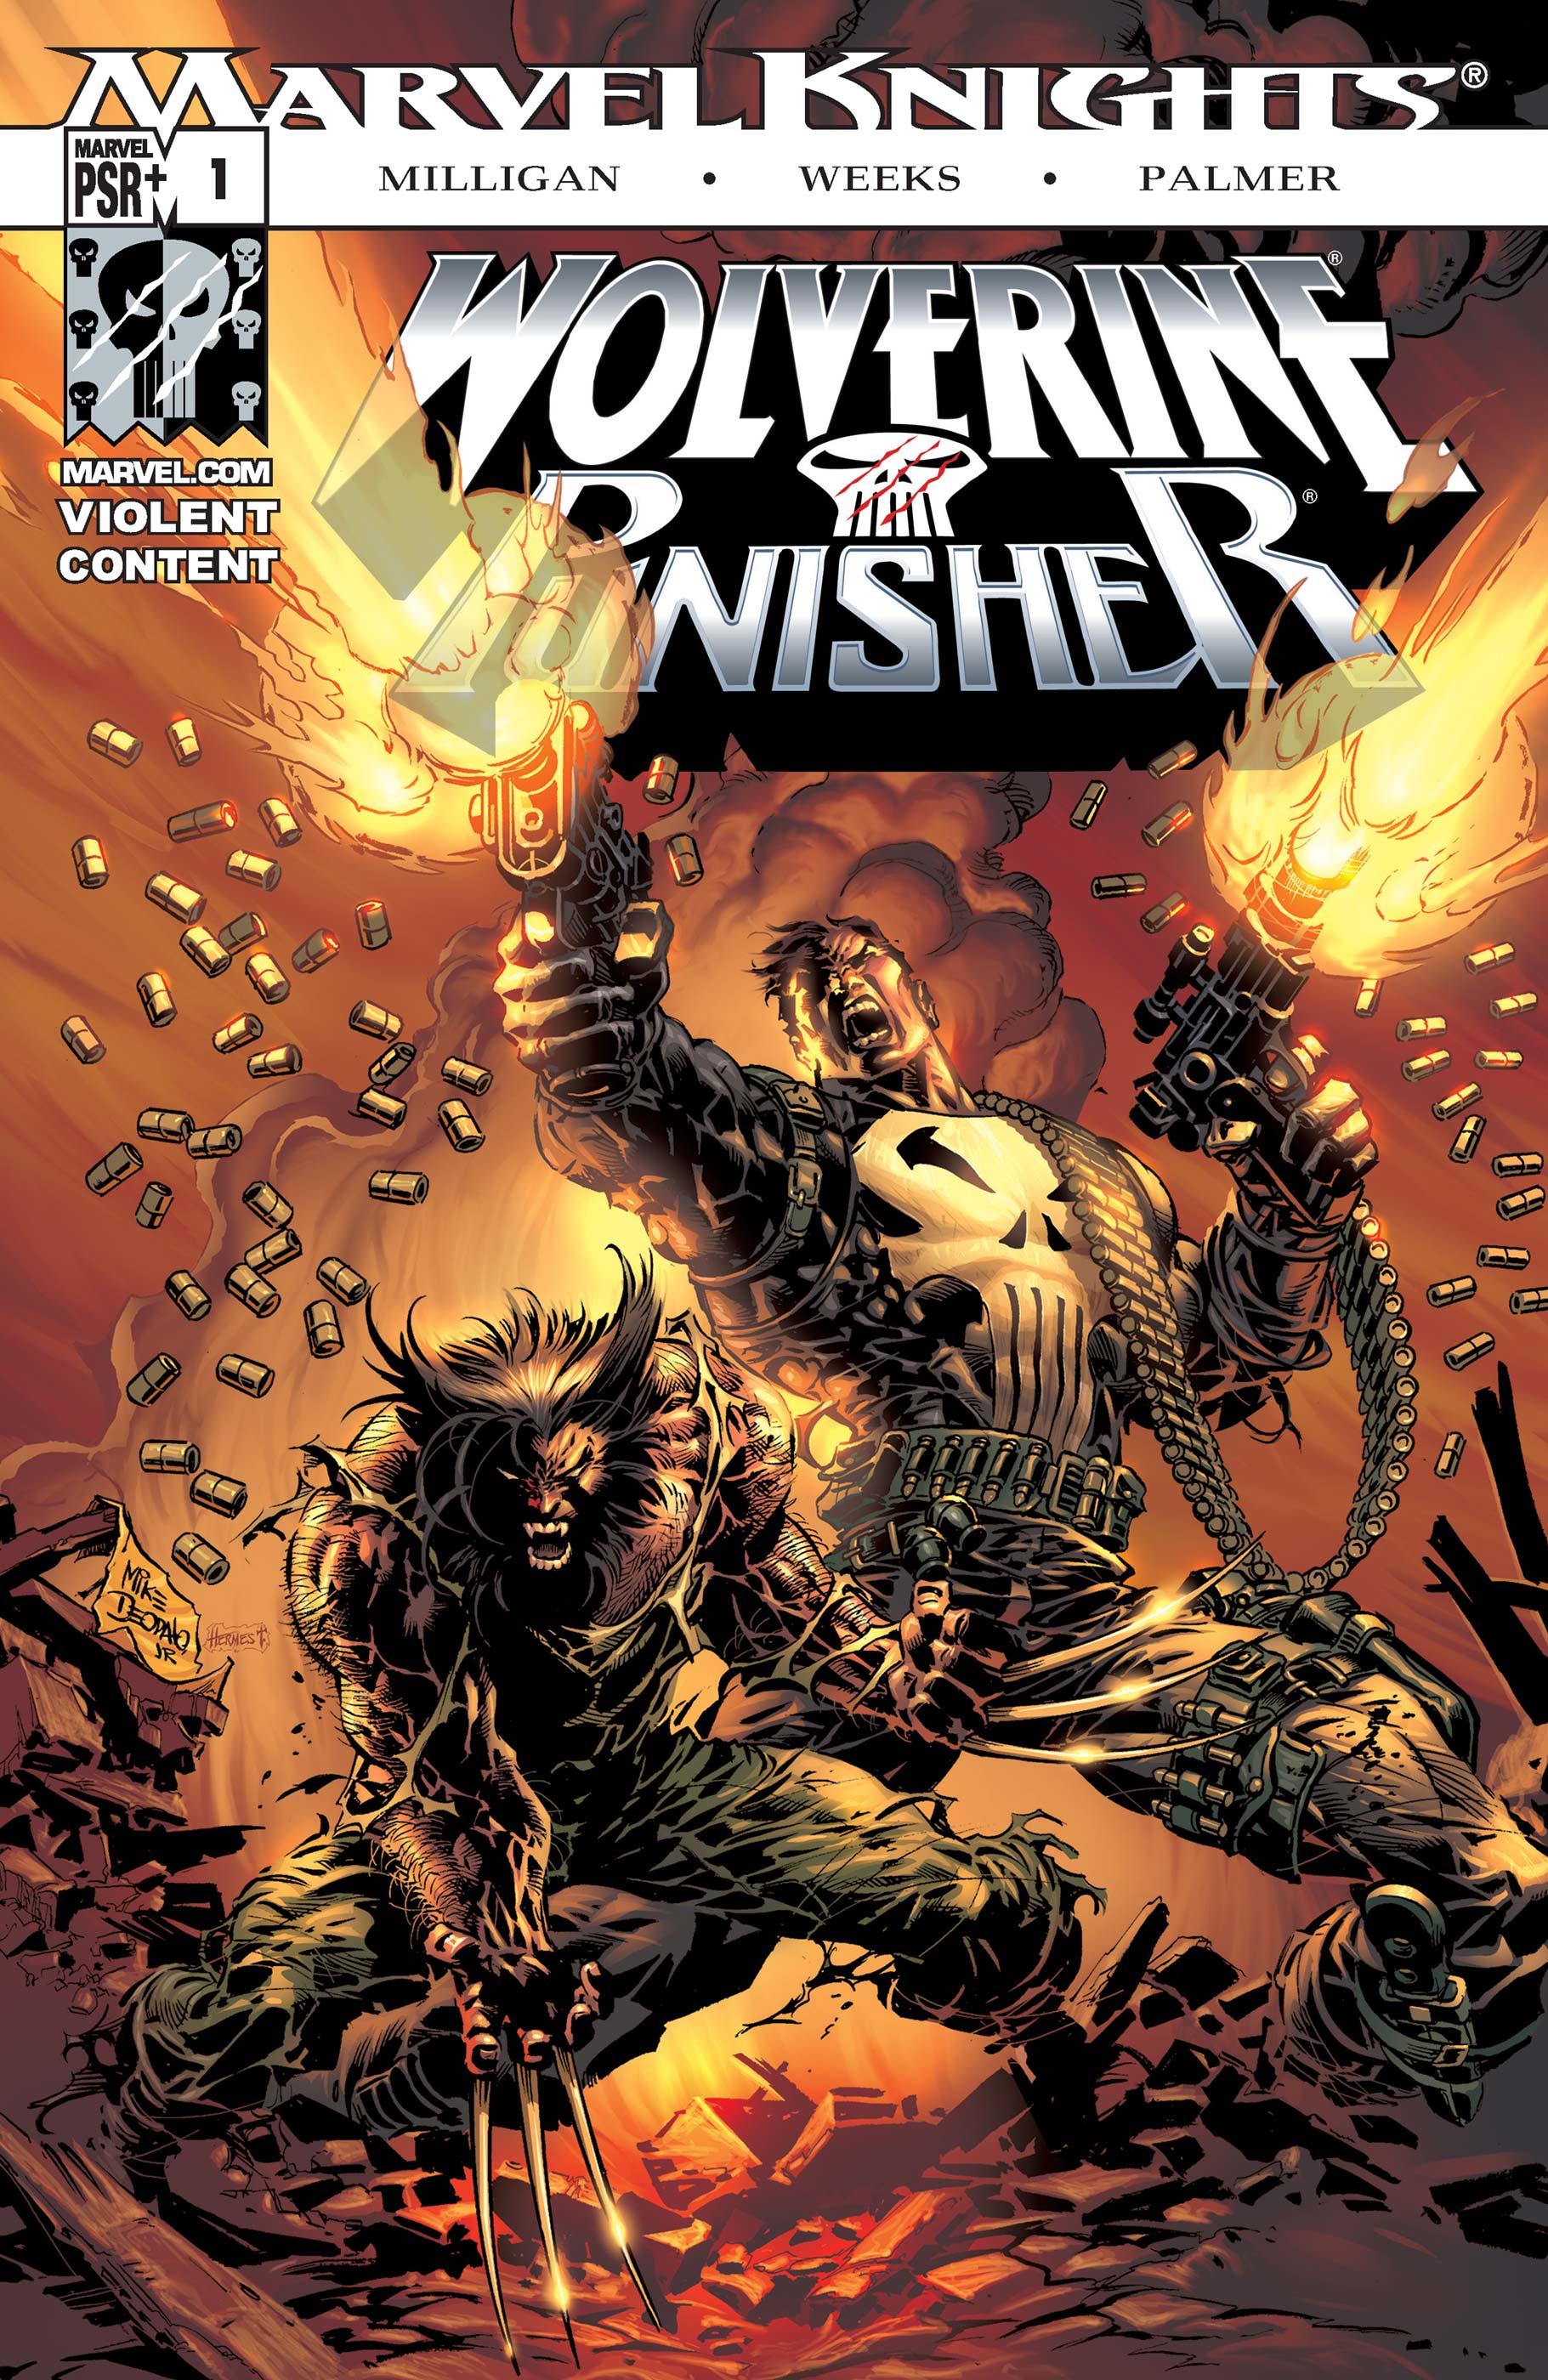 Wolverine/Punisher (2004) #1